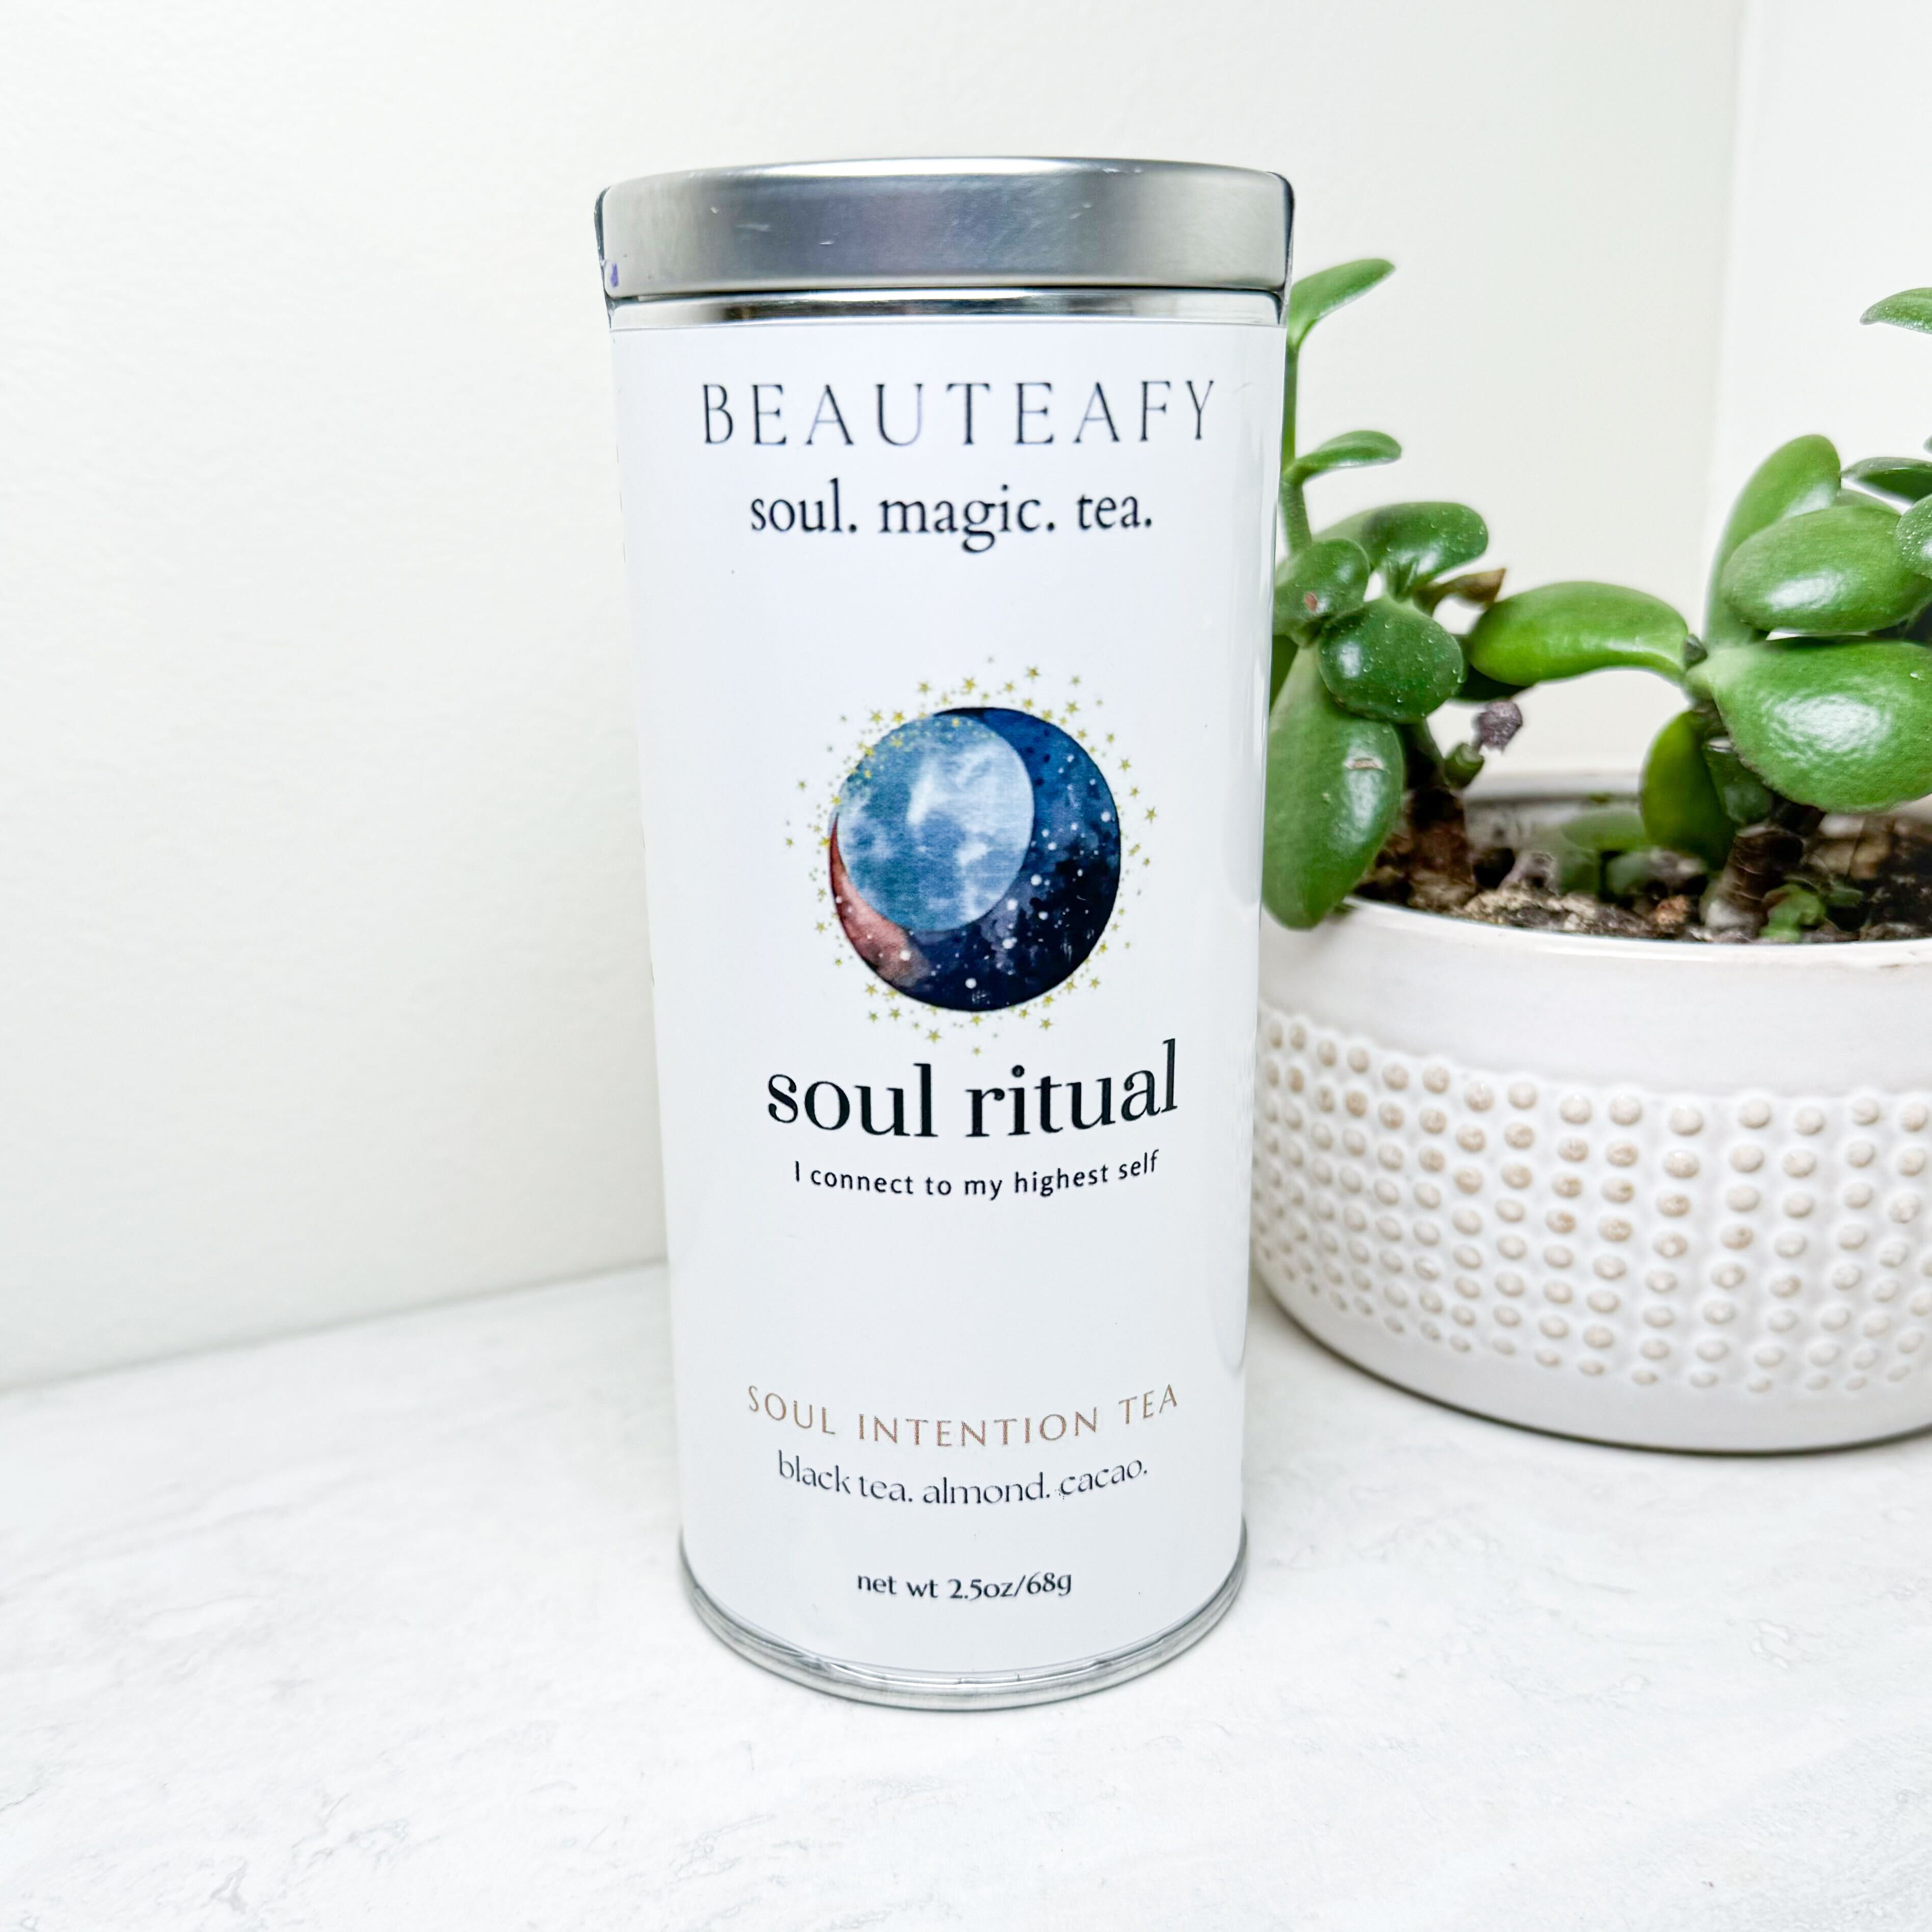 Beauteafy Organic Tea | Various Blends